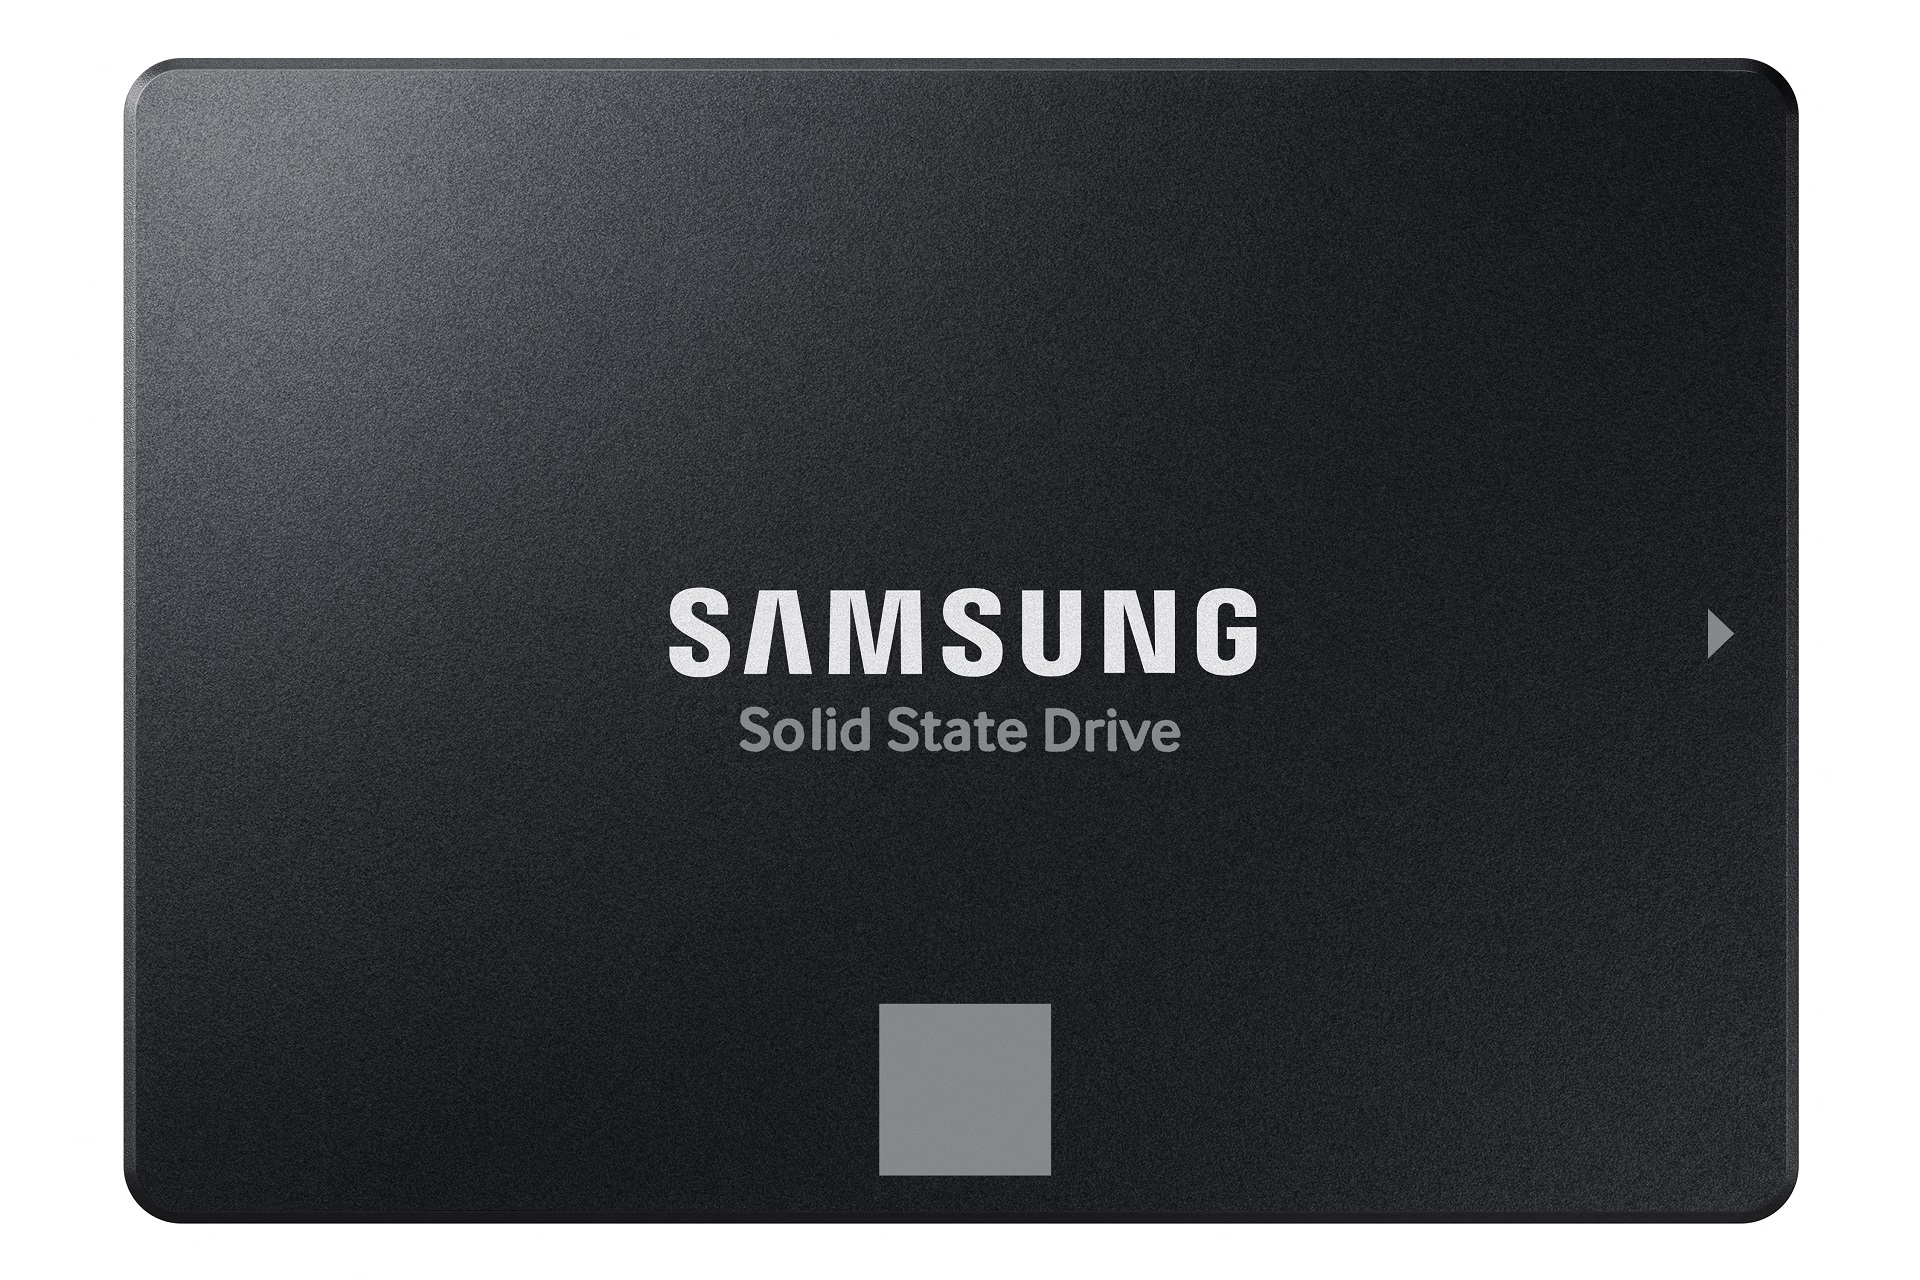 Hiểu về thẻ nhớ Secure Digital (SD) của Samsung